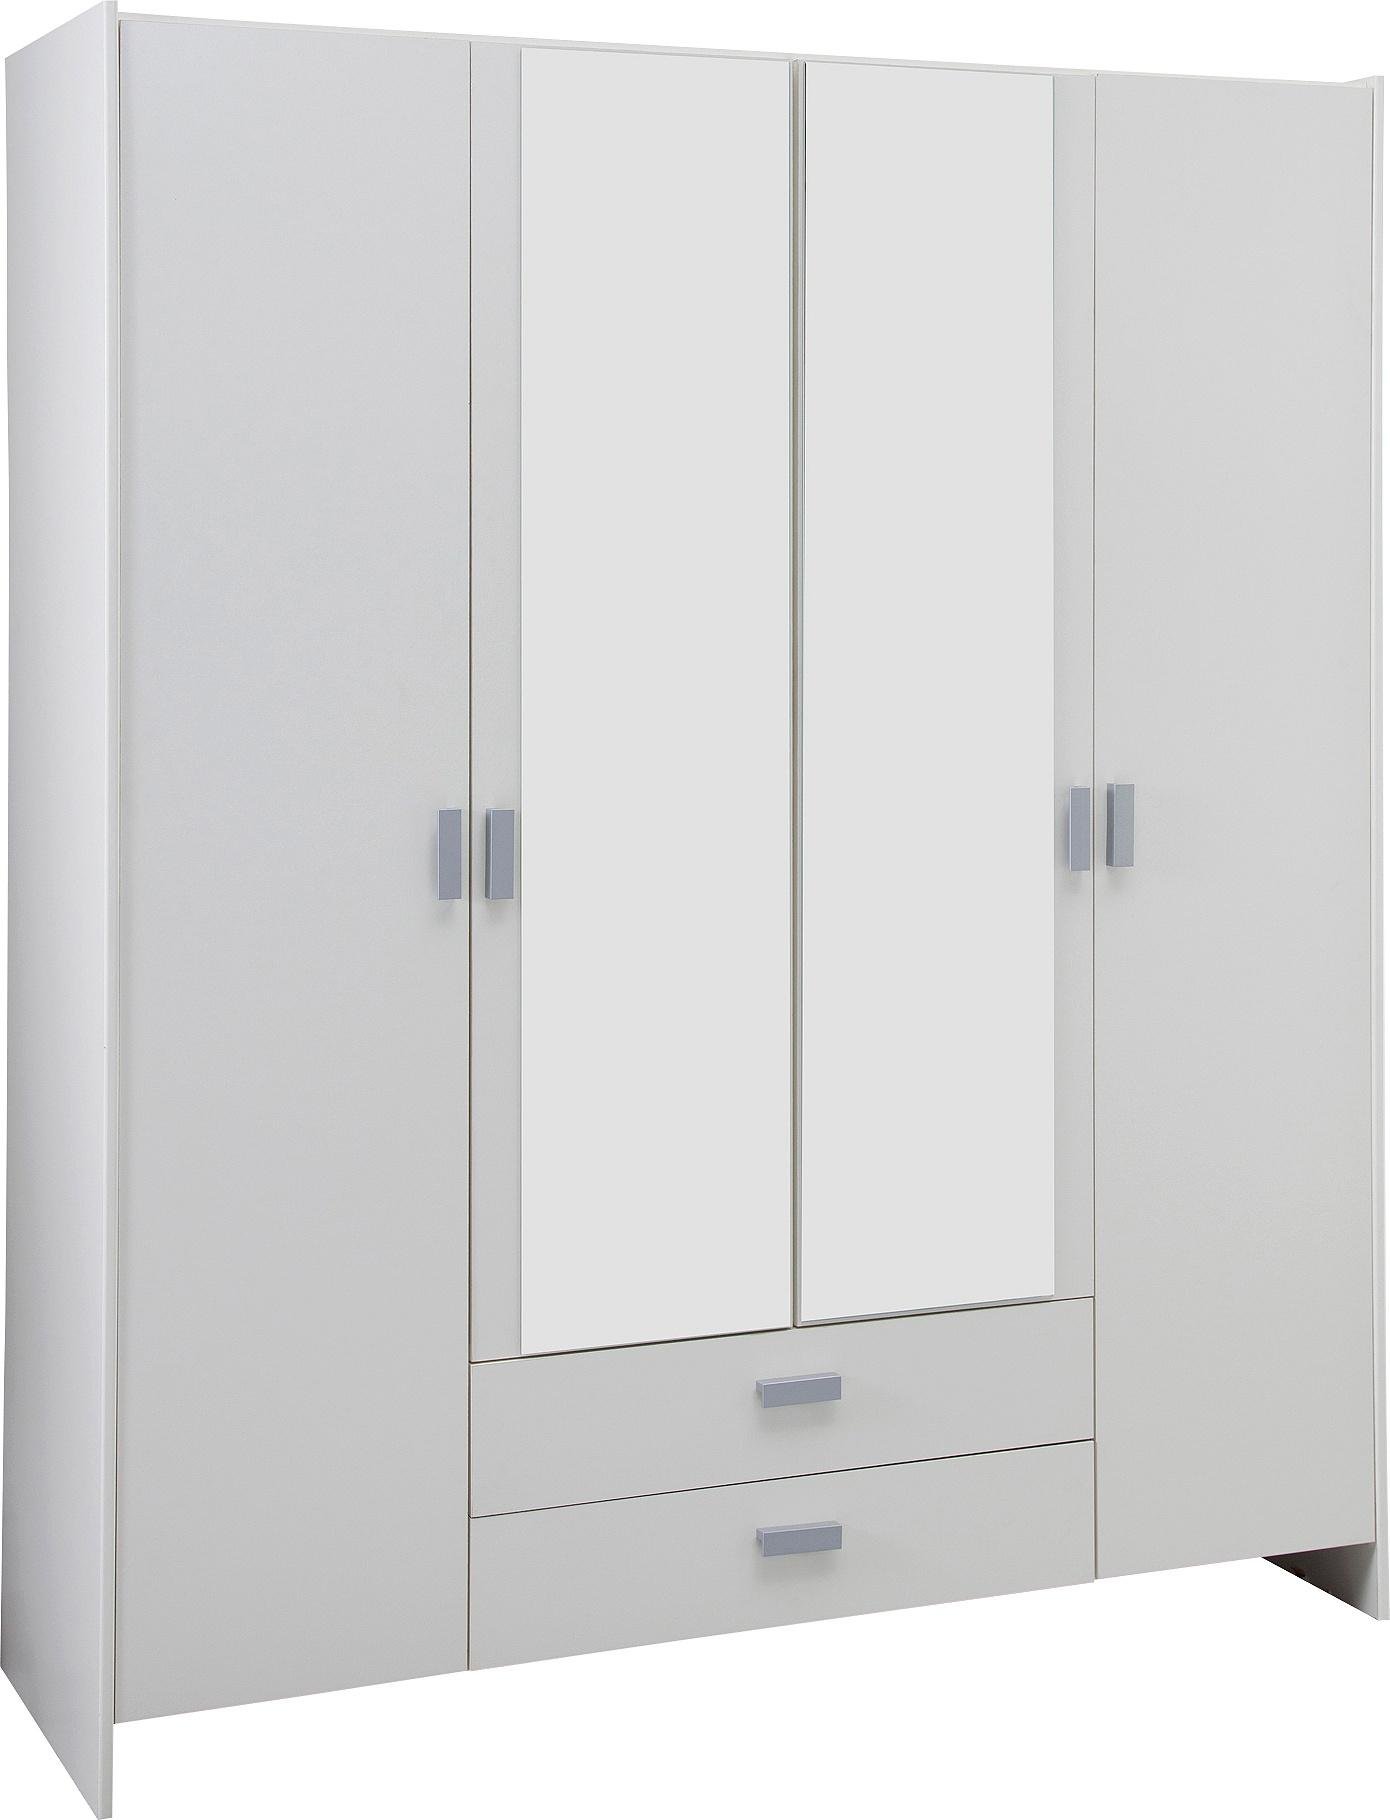 Argos Home Capella 4 Door 2 Drawer Mirrored Wardrobe - White